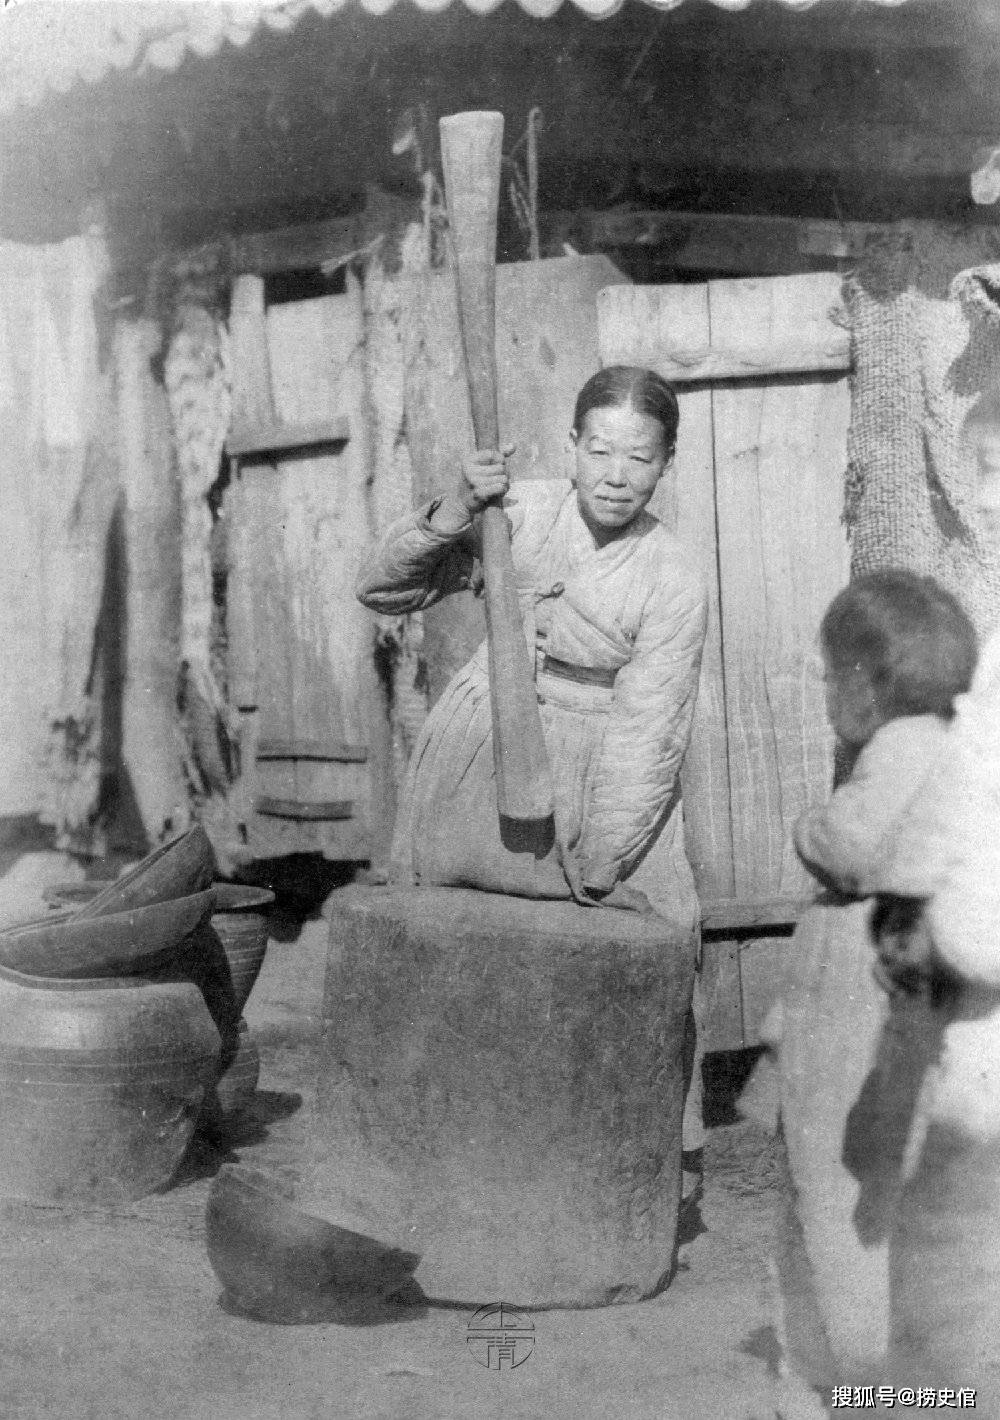 老照片,一百多年前朝鲜人的生活情景